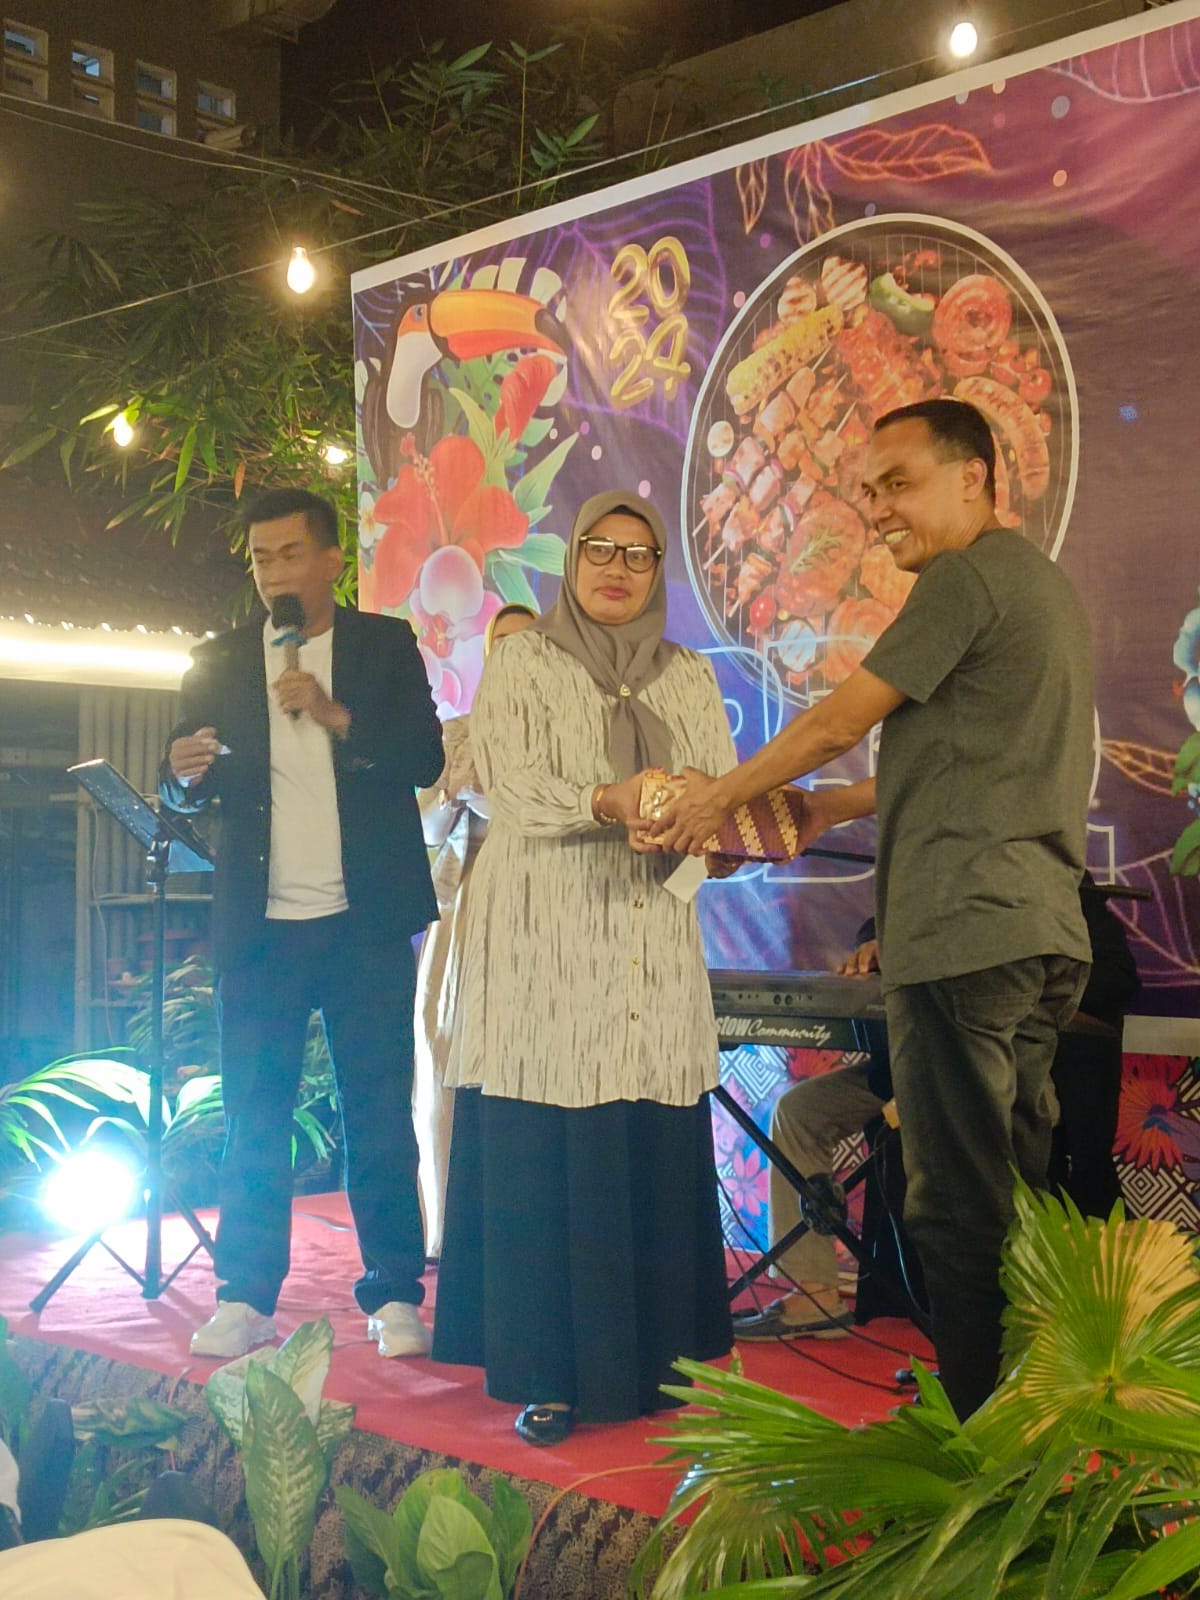 Grand Palace Hotel Makassar Gelar Perayaan Malam Tahun Baru Bertema "BBQ"